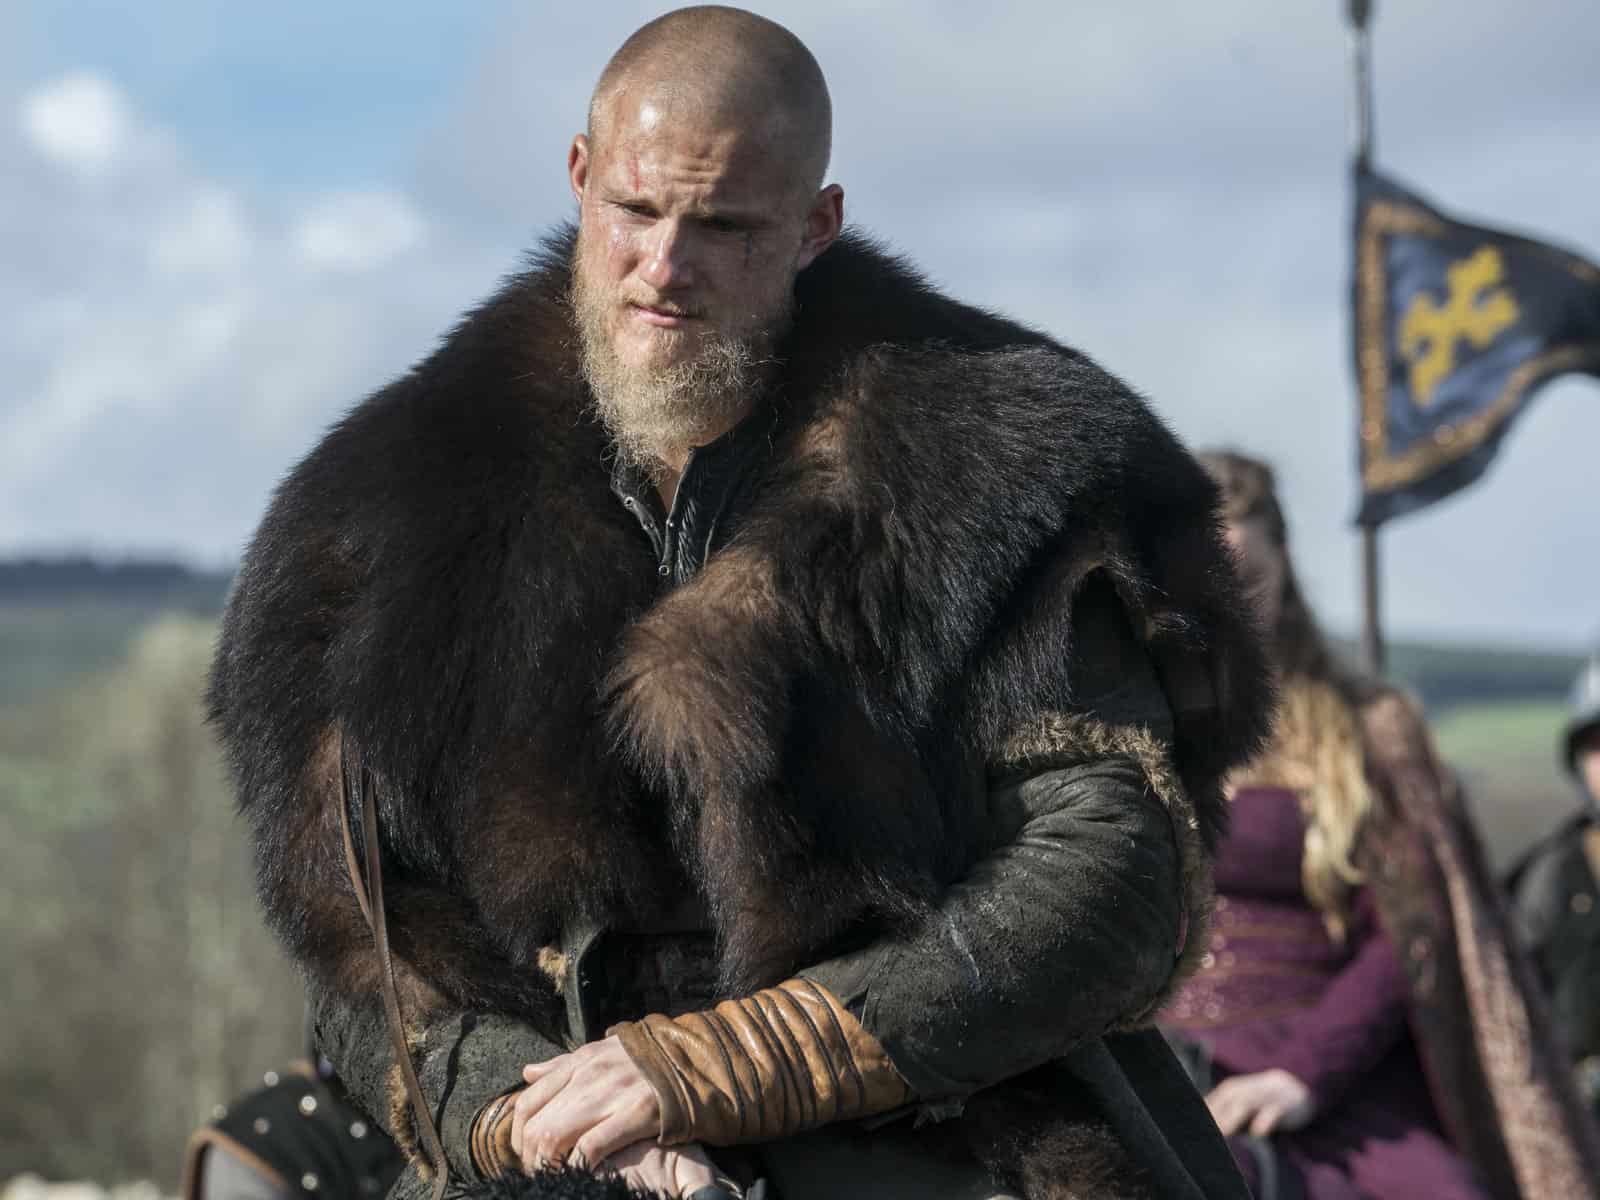 Vikings da Depressão - ⚔️Bjorn ao lado de sua verdadeira mãe nas Sagas  Nórdicas⚔️ Isso mesmo, de acordo com as sagas, Björn Ironside era filho do  semi-lendário rei Ragnar Lodbrok (Lothbrok) com